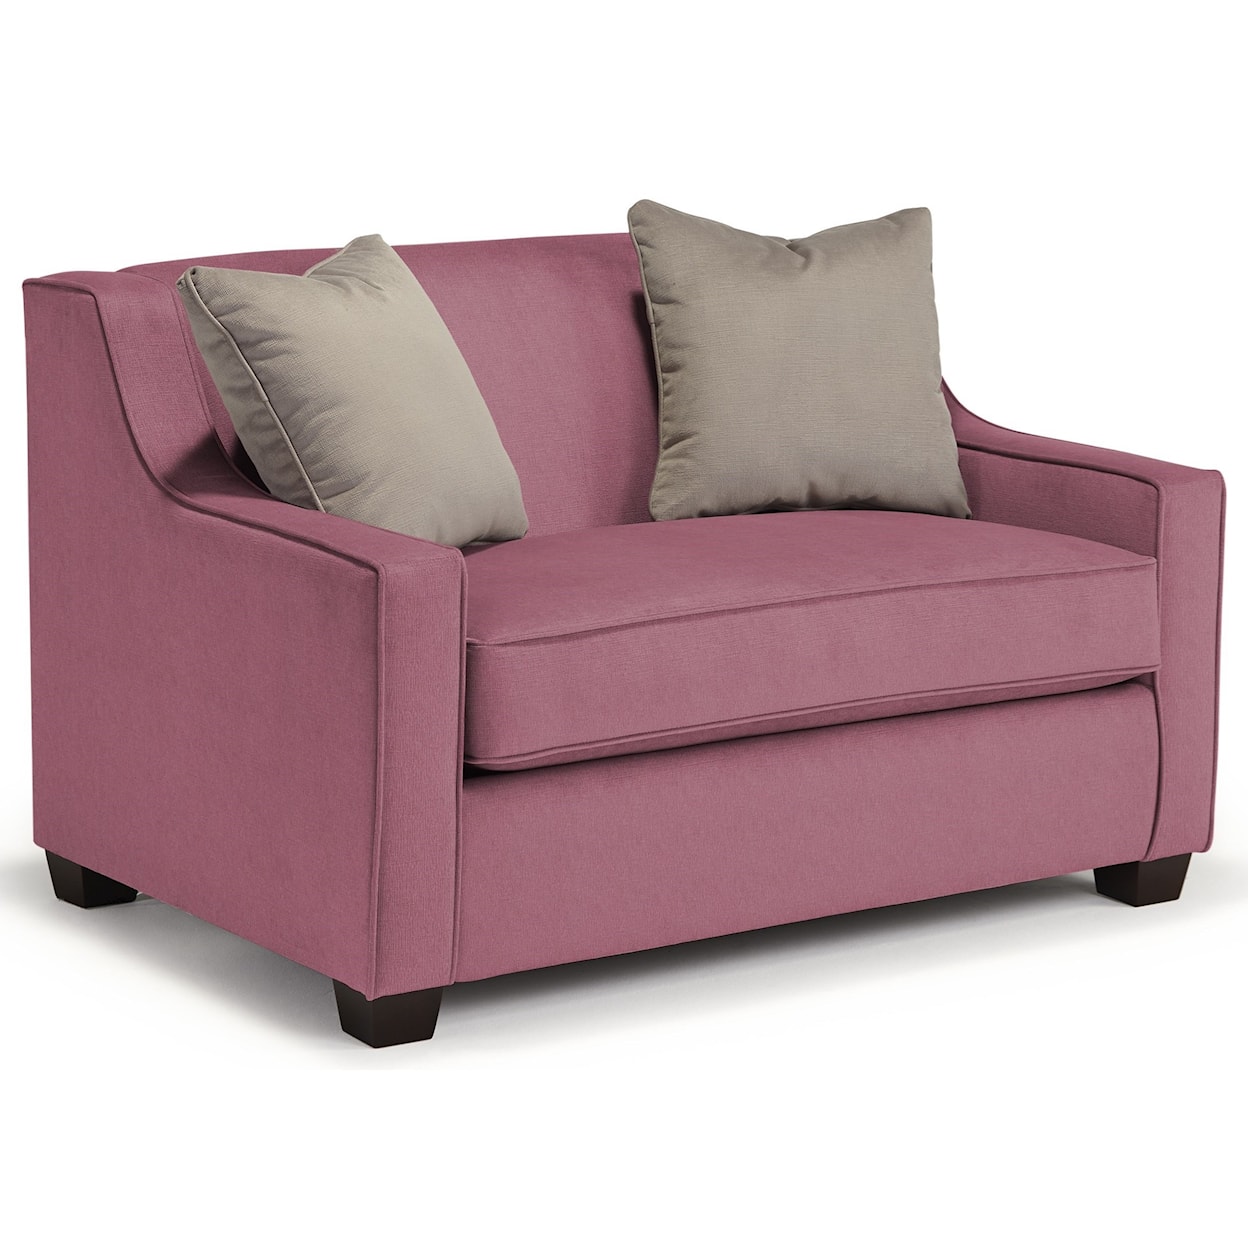 Bravo Furniture Marinette Twin Air Dream Sleeper Chair